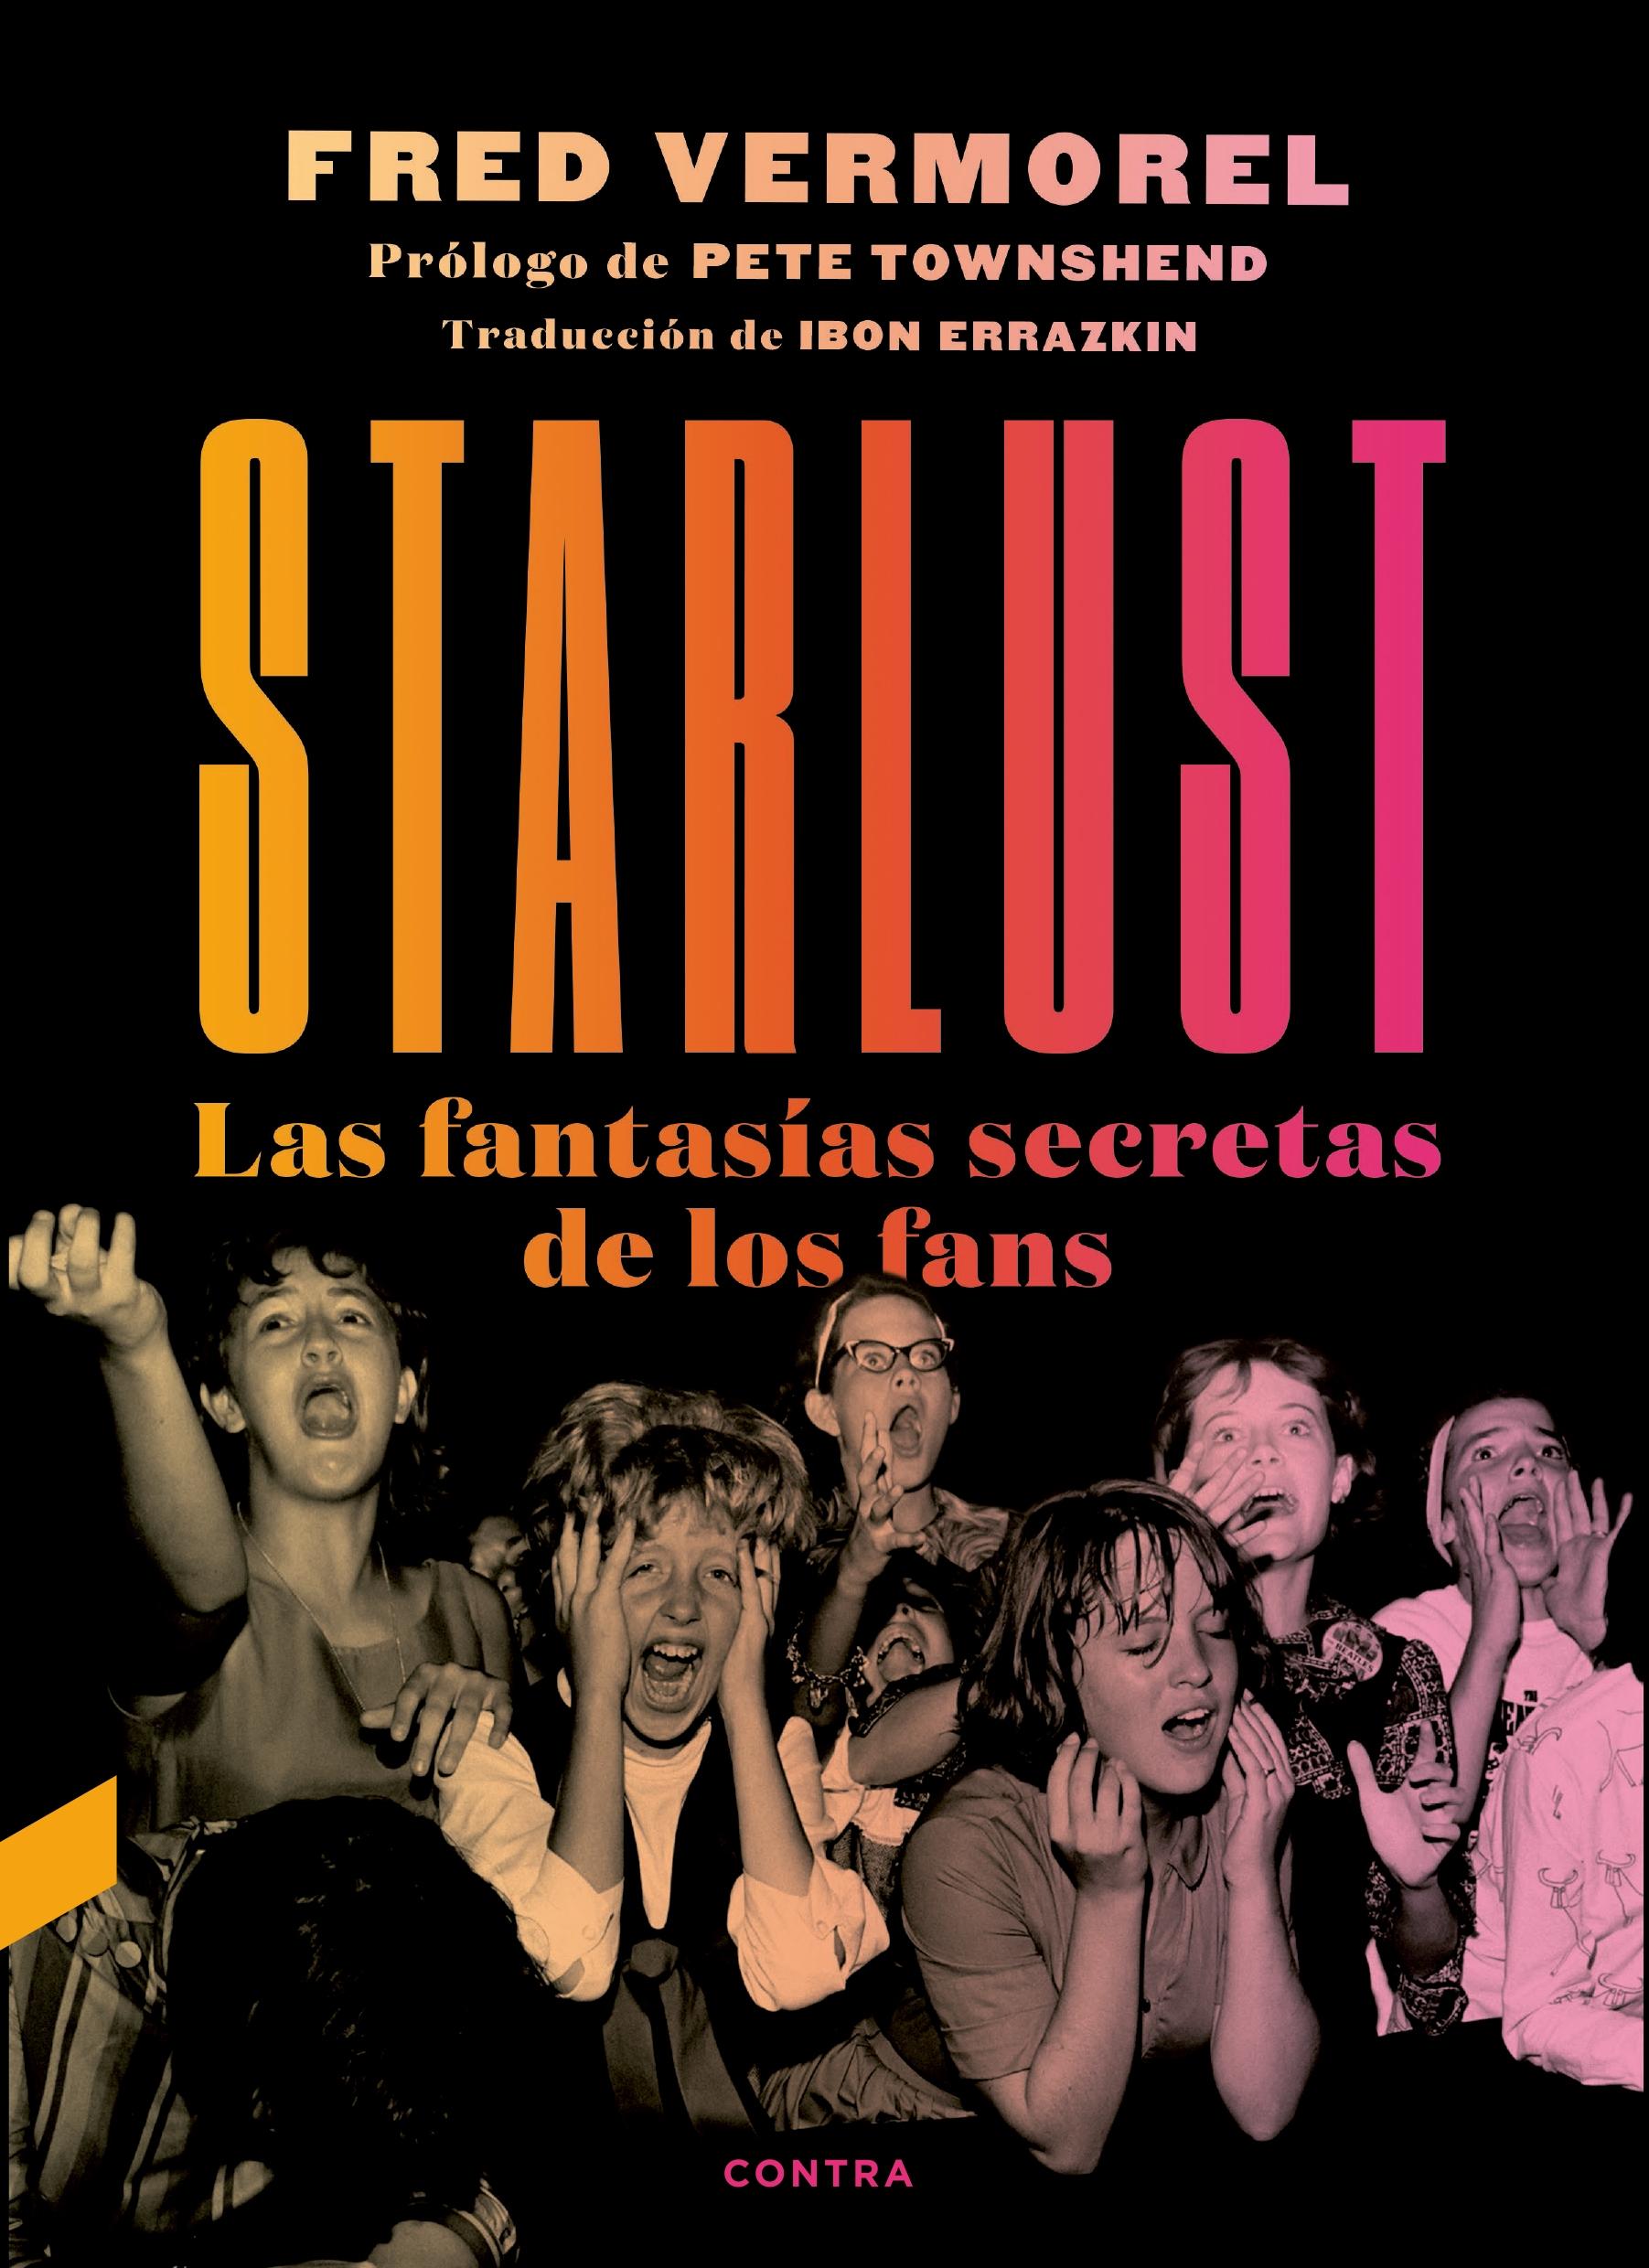 Starlust "Las fantasías secretas de los fans"